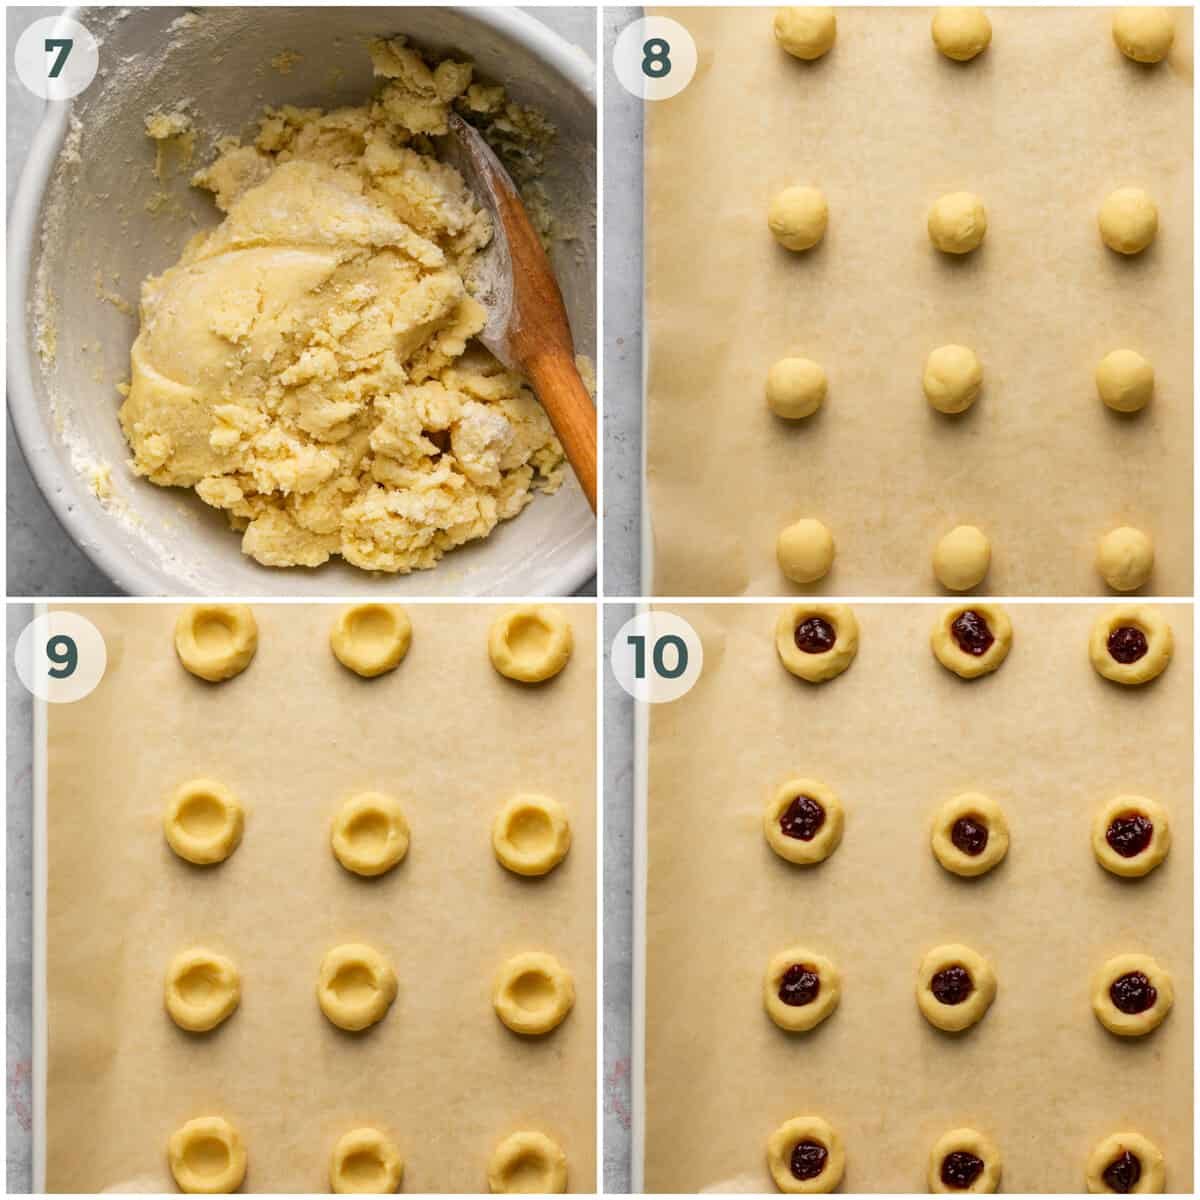 steps 7-10 of preparing thumbprint cookies